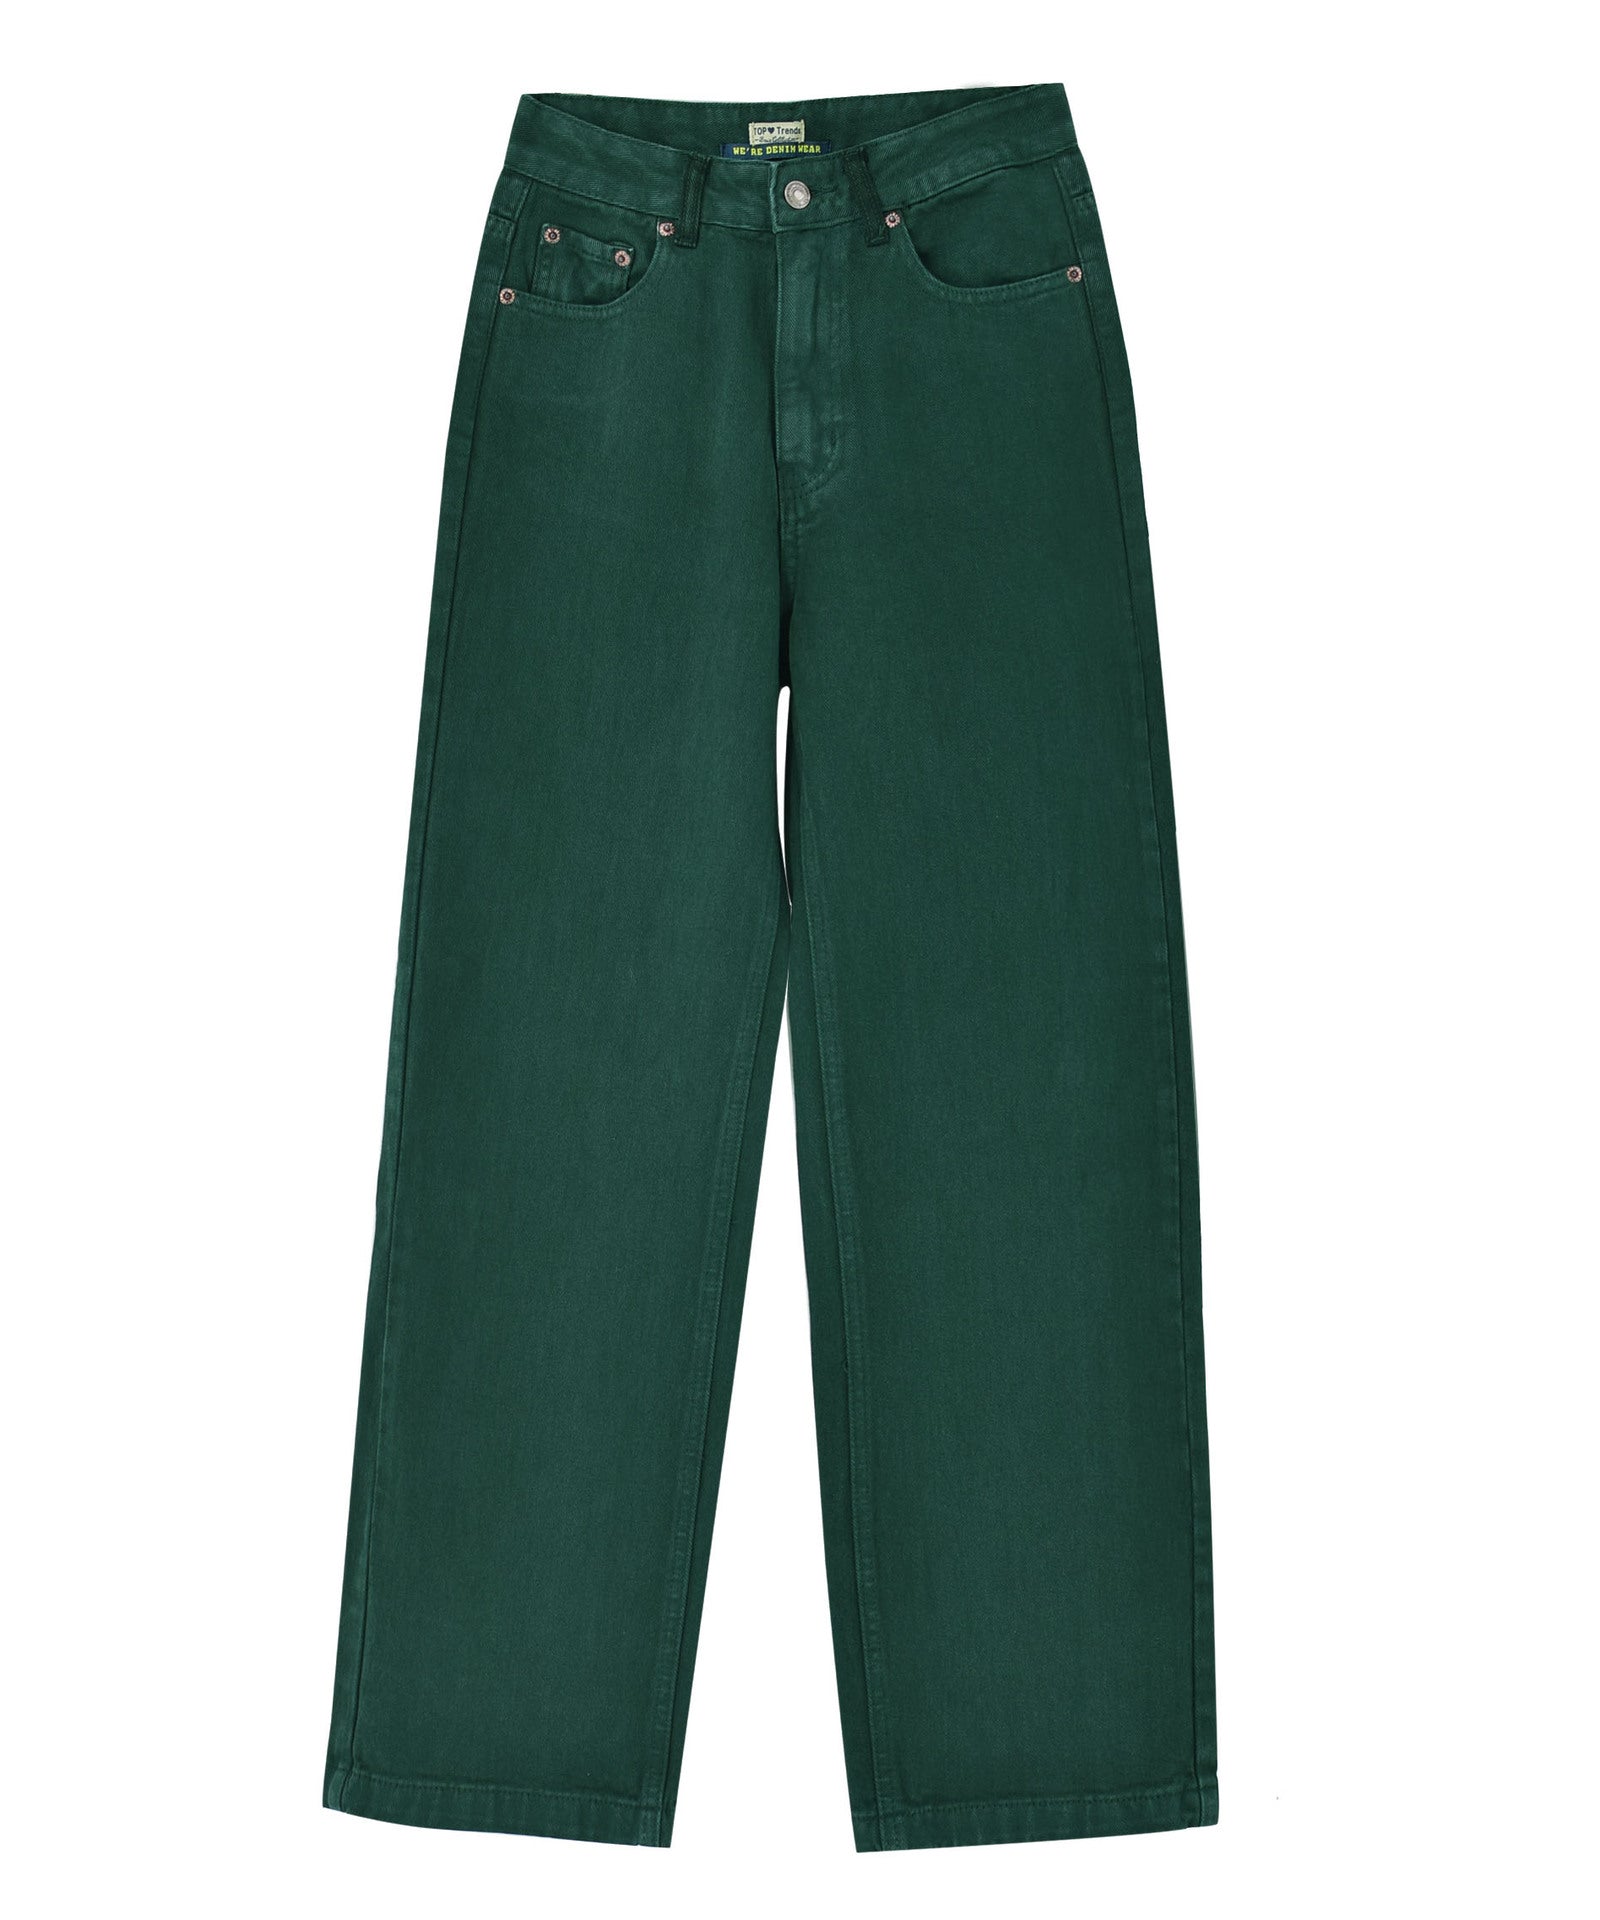 NEW Levi's 511 Jeans Kid's 18 Regular 29X29 Dark Olive Green Denim Slim Fit  NWT | eBay